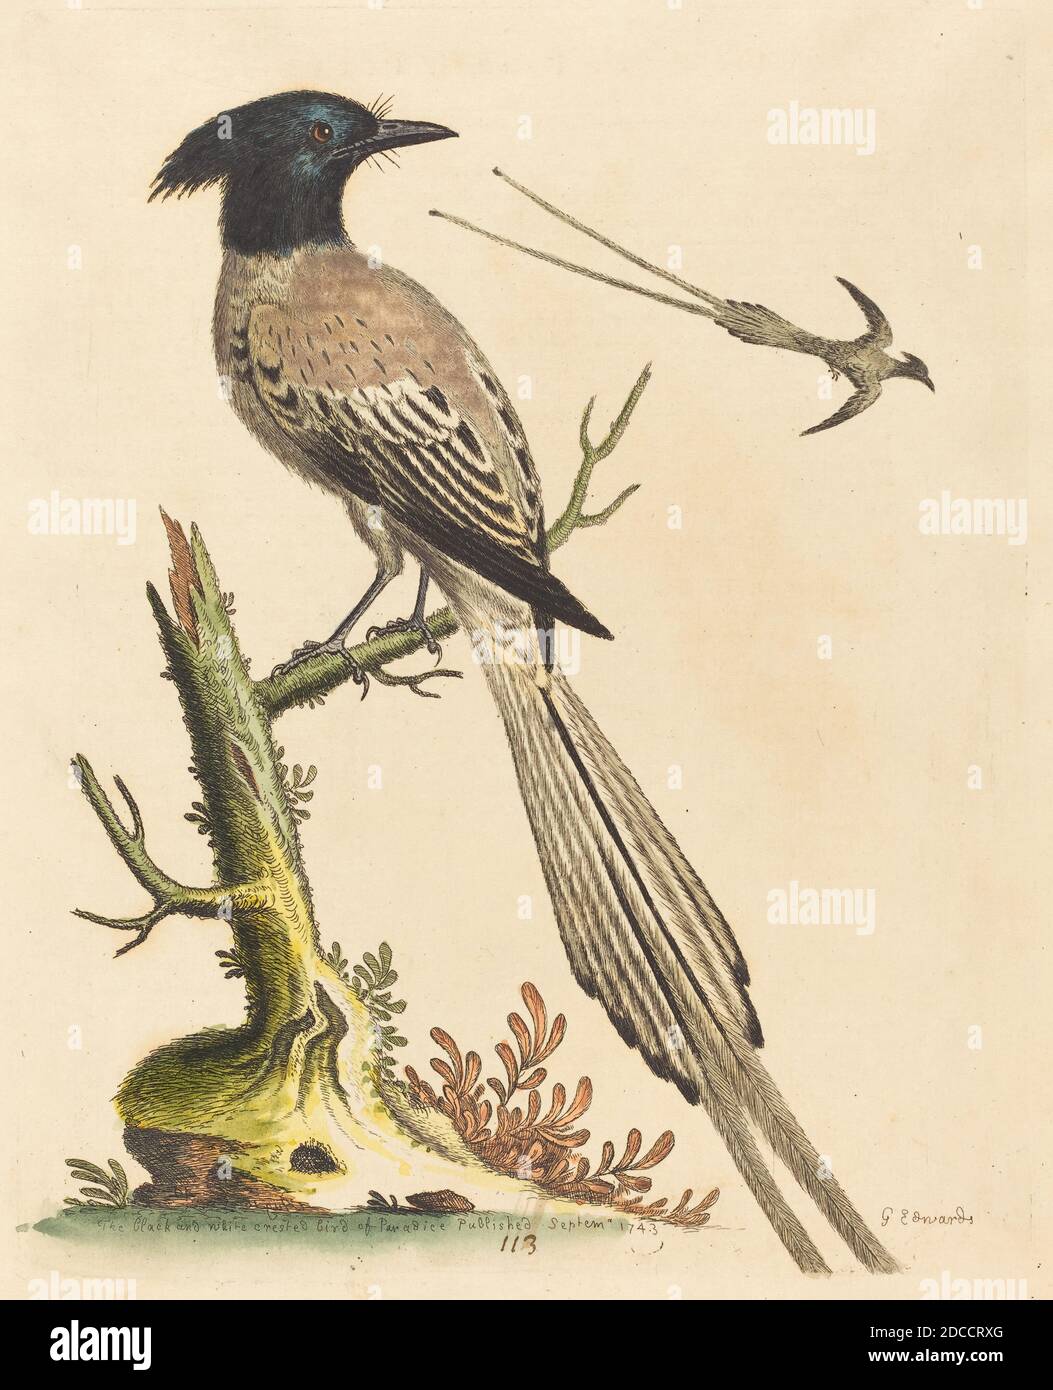 George Edwards, (artista), Inglese, 1694 - 1773, l'uccello del paradiso in bianco e nero, una storia naturale di uccelli e animali non comuni (1743-51), (serie), pubblicato nel 1743, incisione colorata a mano su carta deposta, piatto: 23.9 x 18.9 cm (9 7/16 x 7 7/16 pollici), foglio: 27.9 x 22.1 cm (11 x 8 11/16 pollici Foto Stock